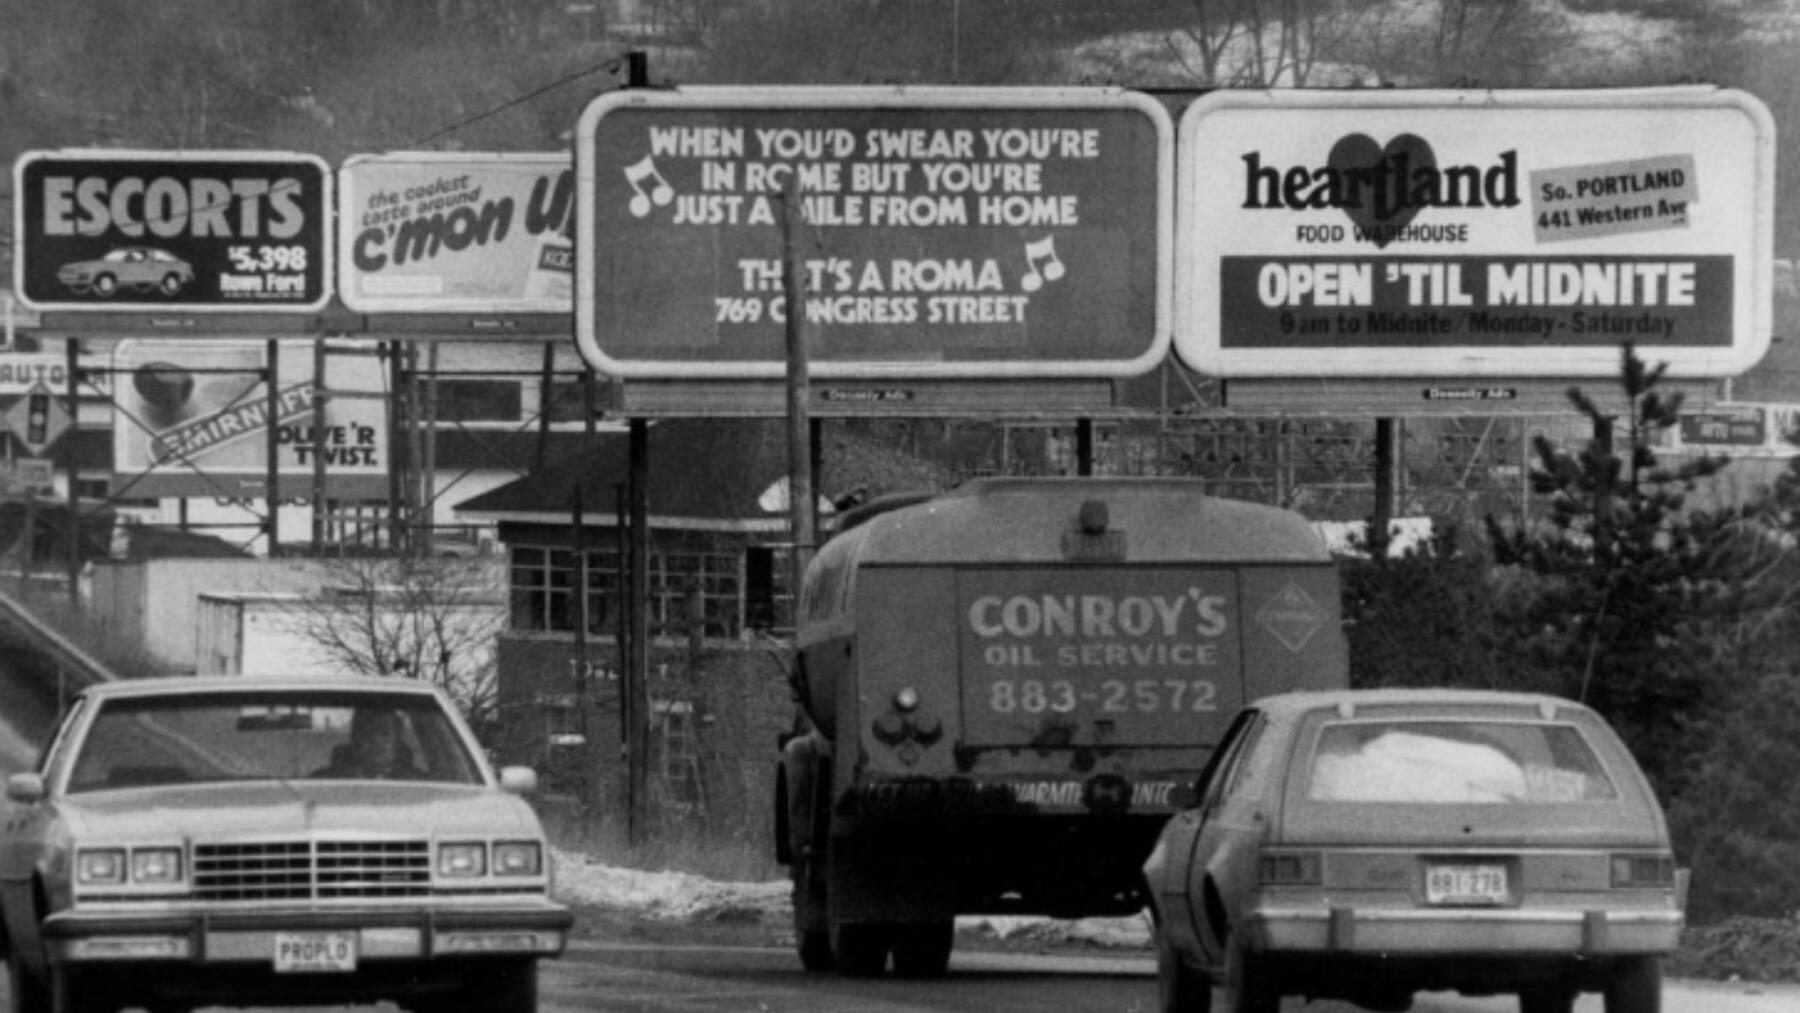 Roma Cafe billboard alongside Route 1 in South Portland in 1980